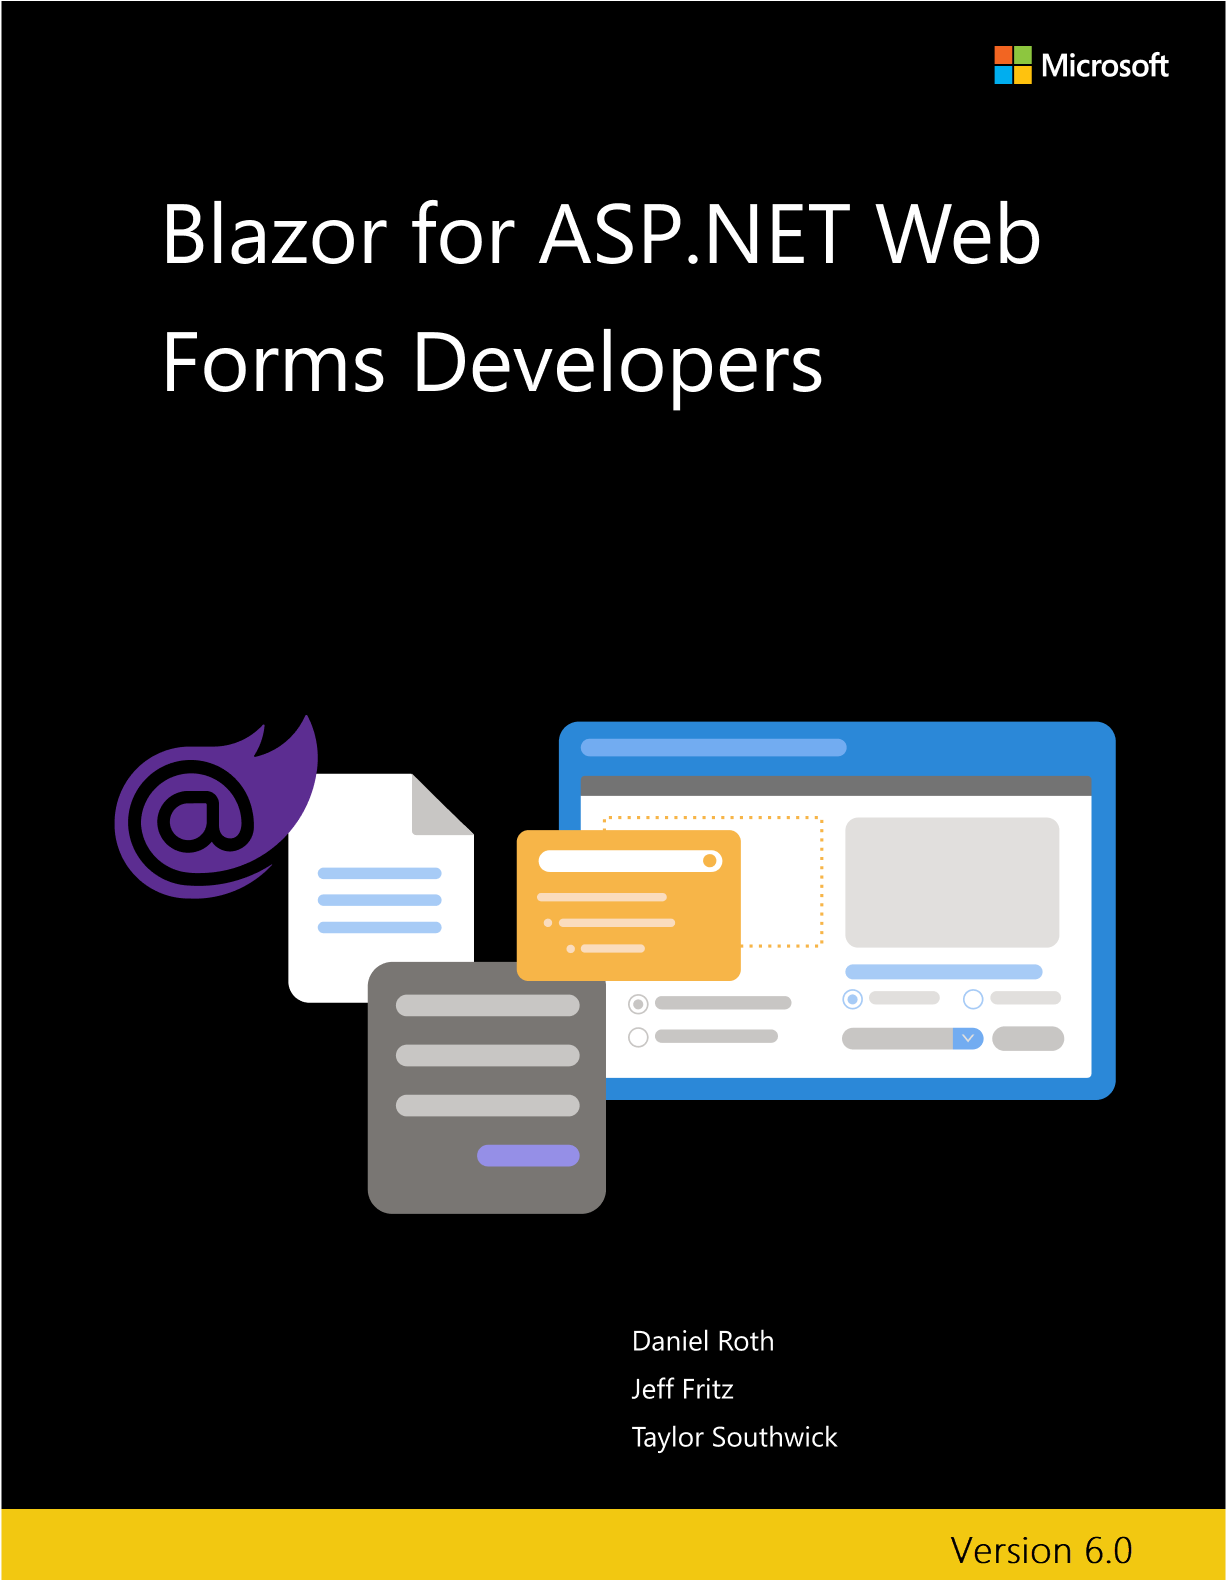 Blazor für ASP.NET Web Forms-Entwickler: Cover des E-Books.